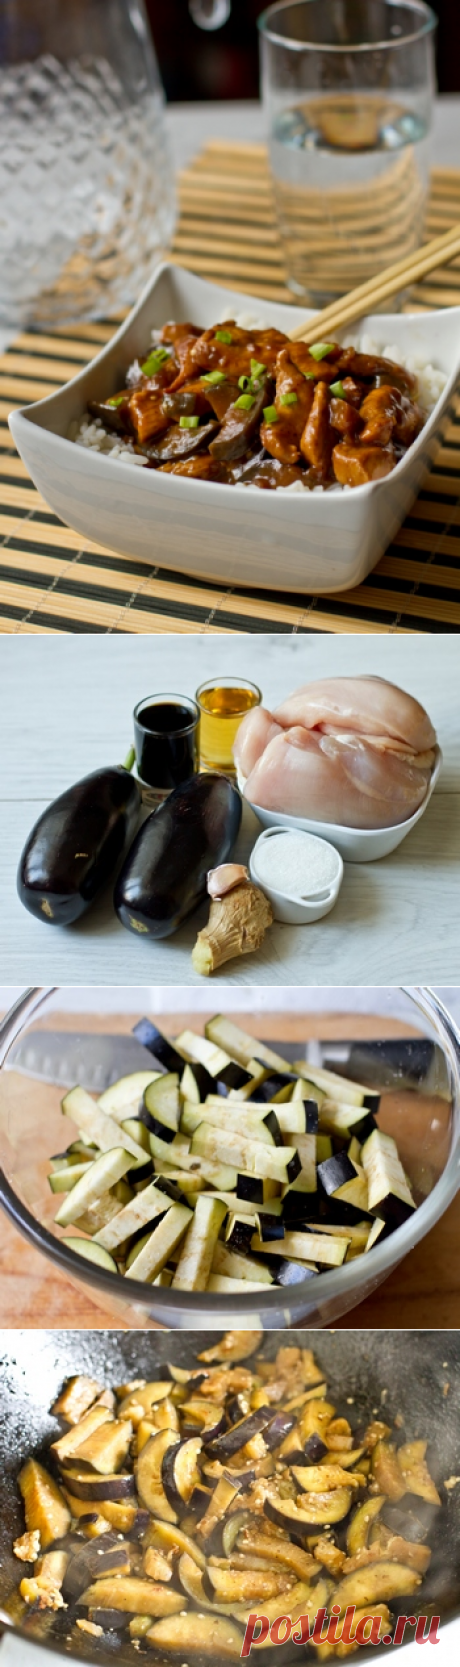 Курица с баклажанами по-китайски - Пошаговый рецепт с фото | Вторые блюда | Вкусный блог - рецепты под настроение